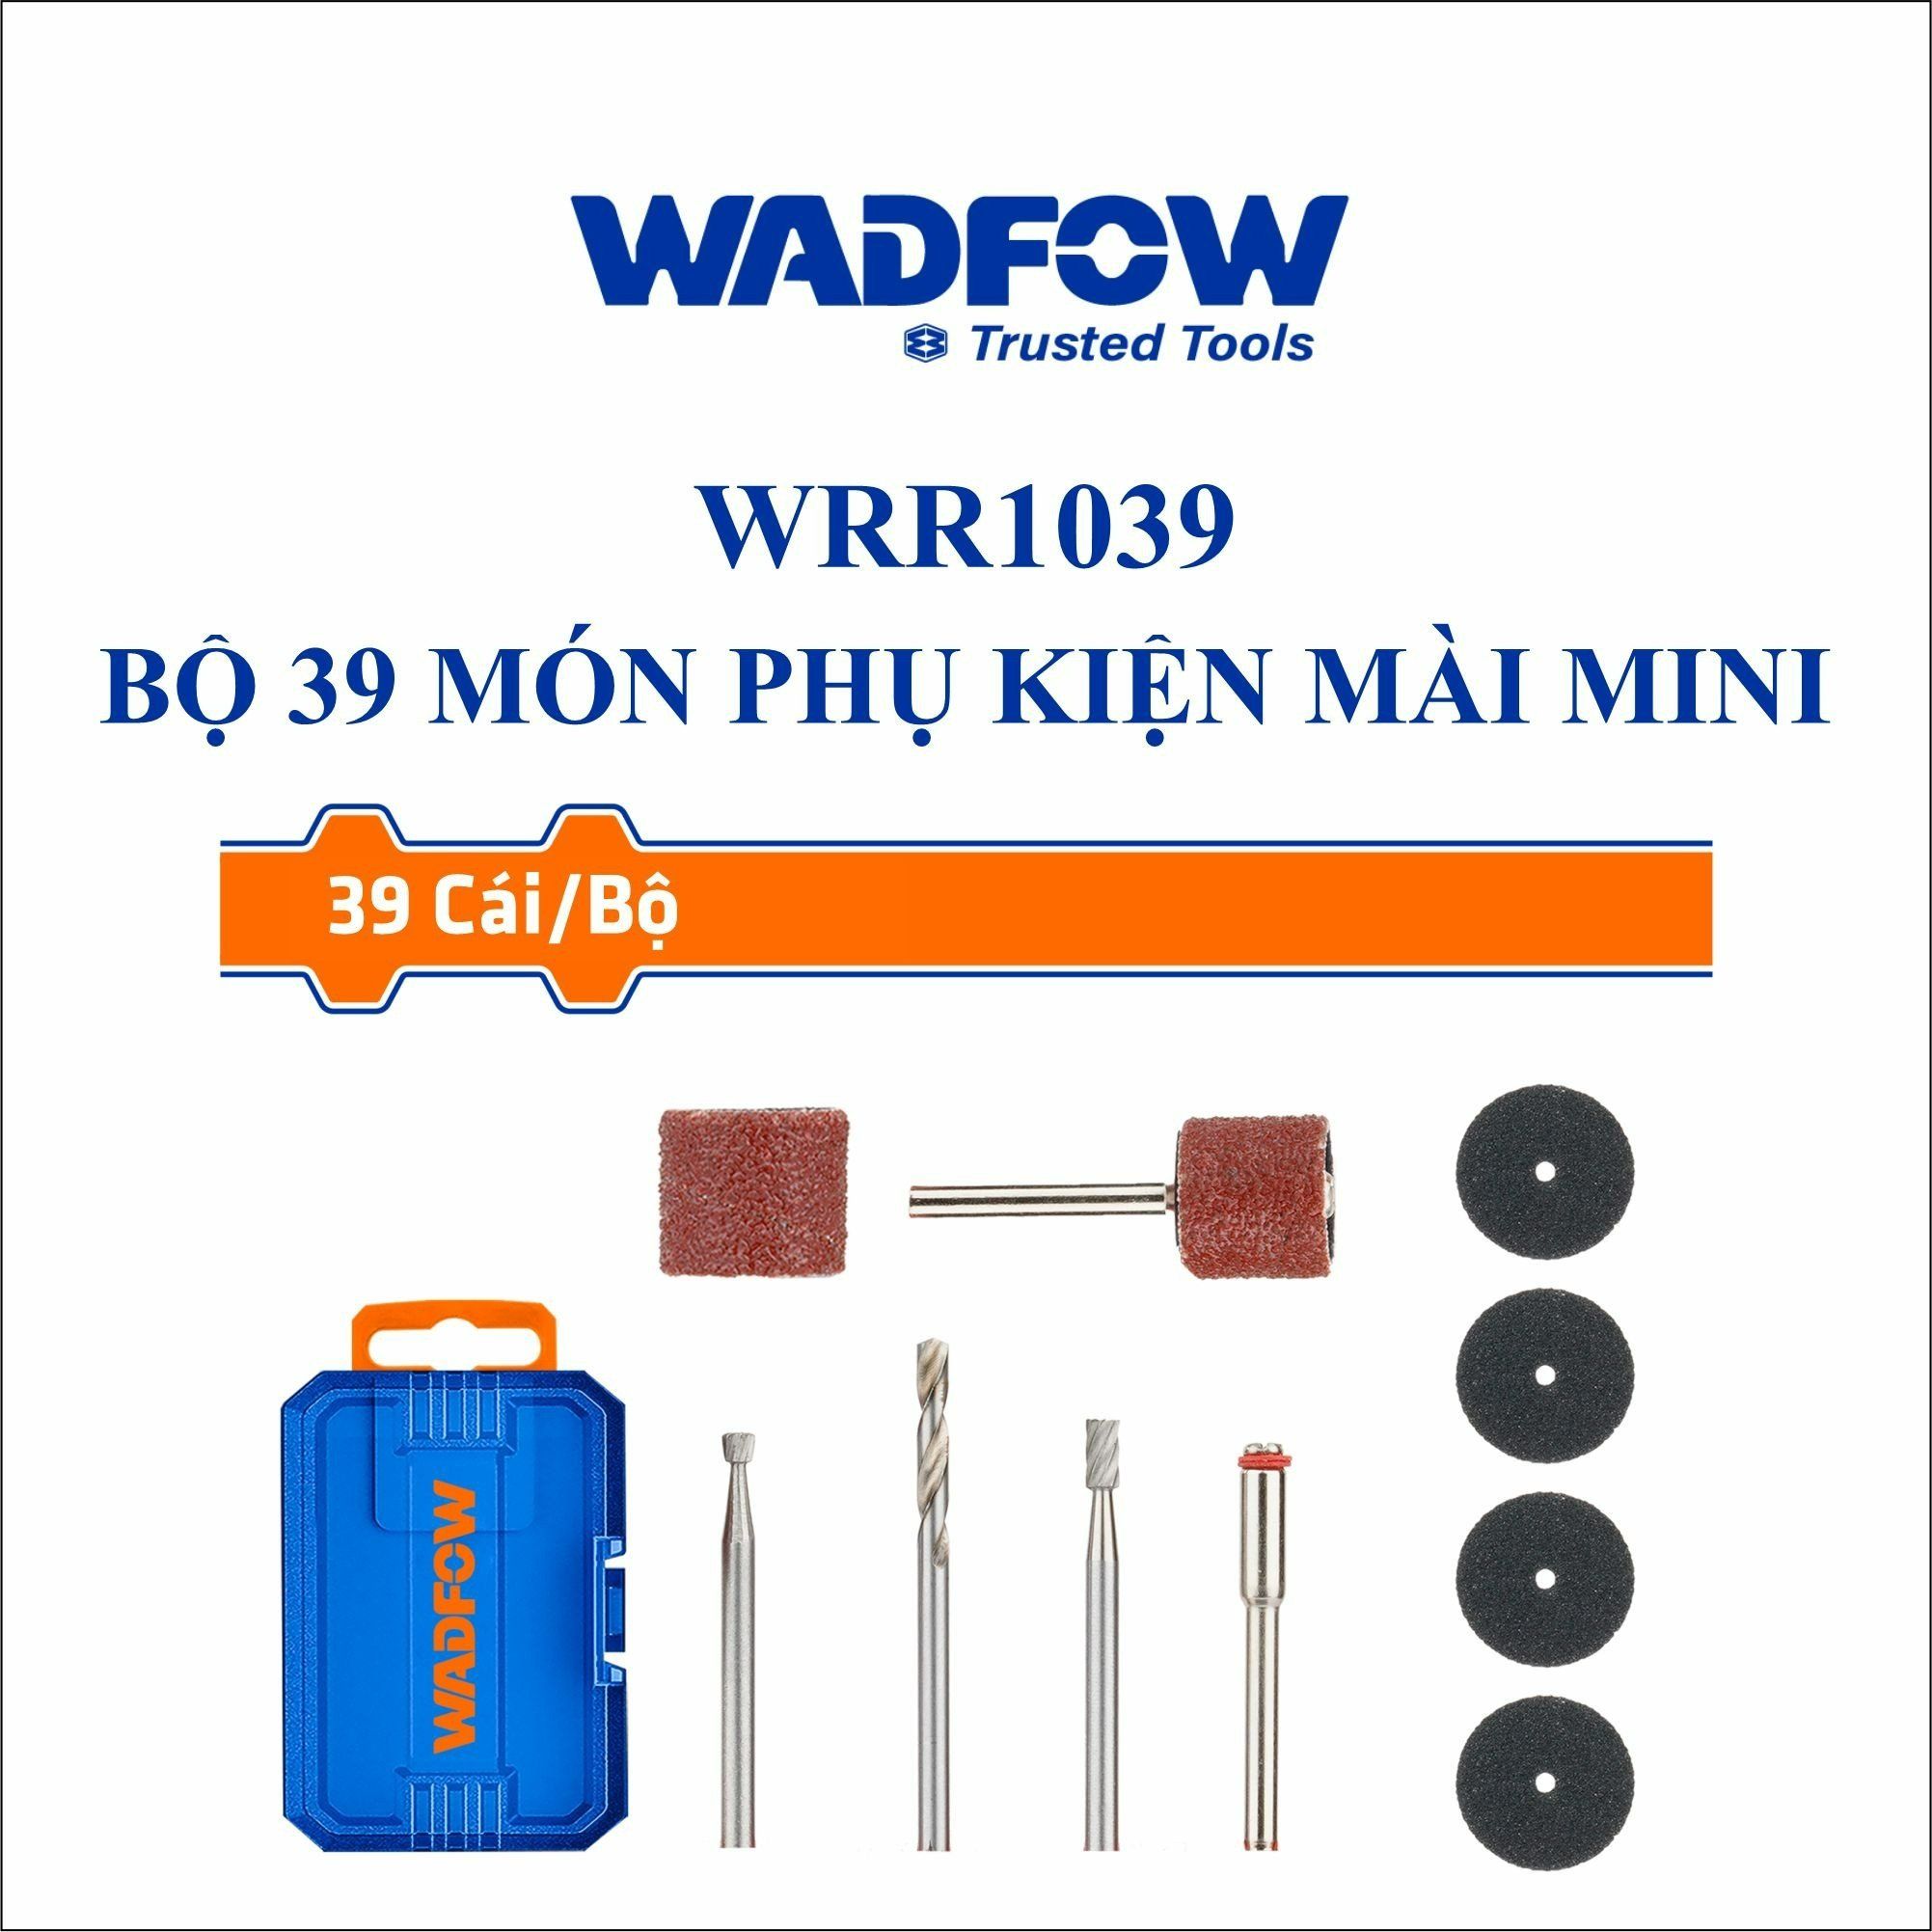  Bộ 39 món phụ kiện mài mini WADFOW WRR1039 